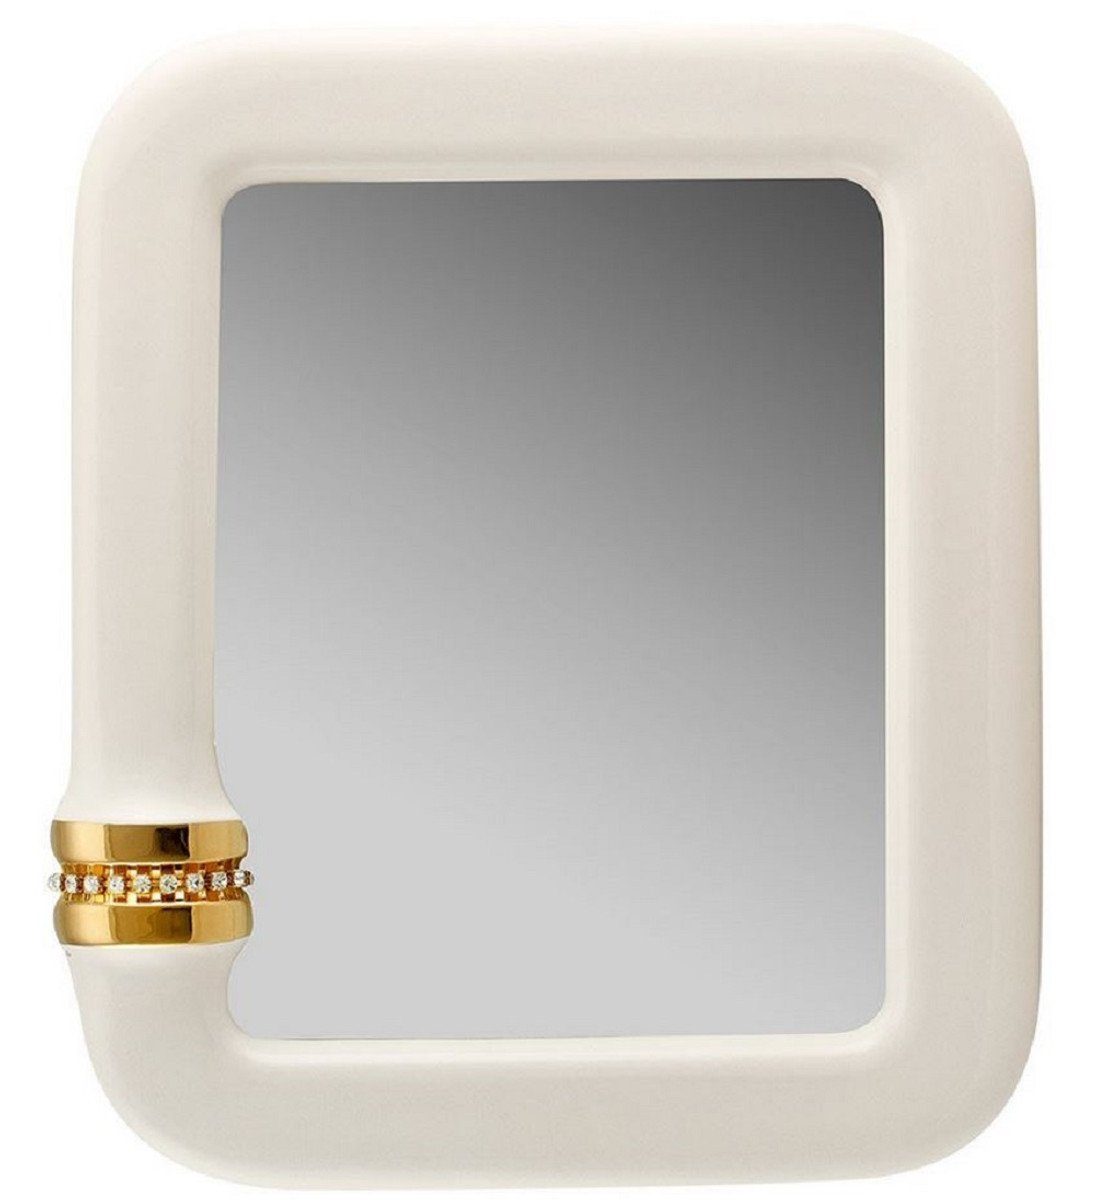 Casa Padrino Spiegel Luxus Spiegel Elfenbeinfarben / Gold 70 x 8 x H. 80 cm - Rechteckiger Keramik Wandspiegel mit Kristallglas Kette - Luxus Qualität